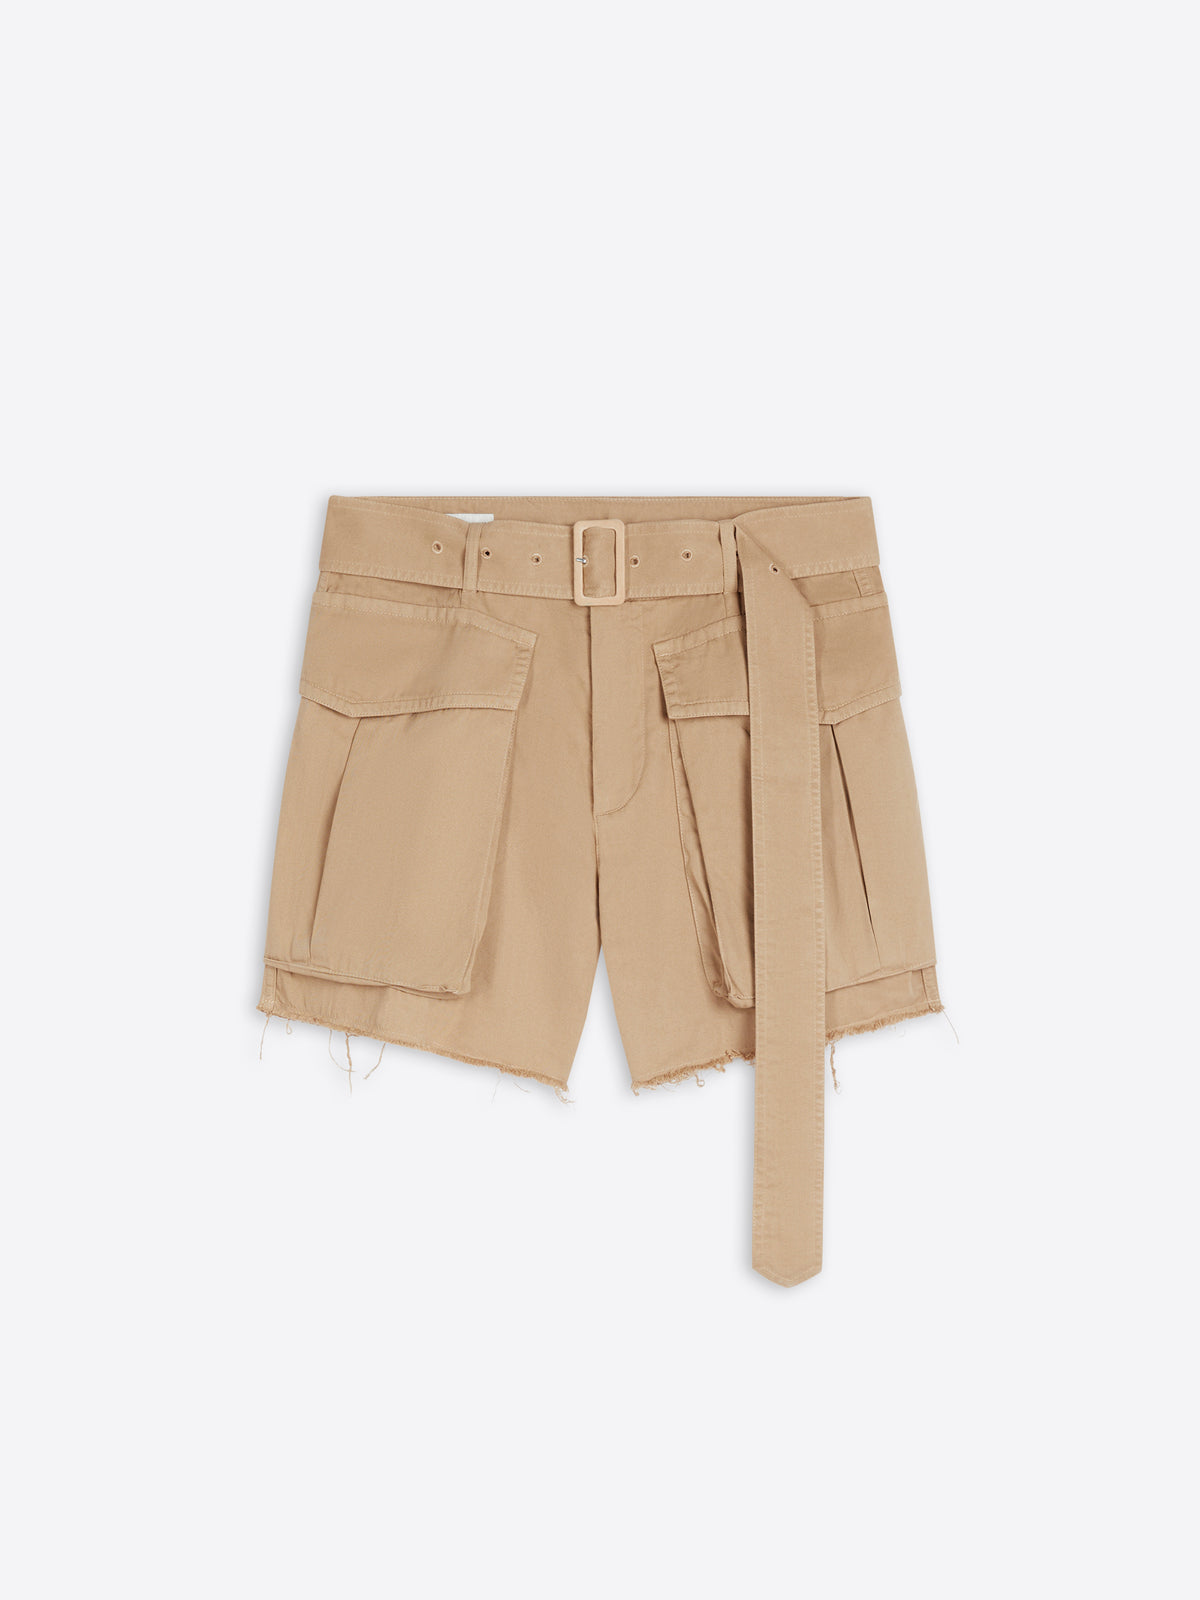 Cropped cargo shorts